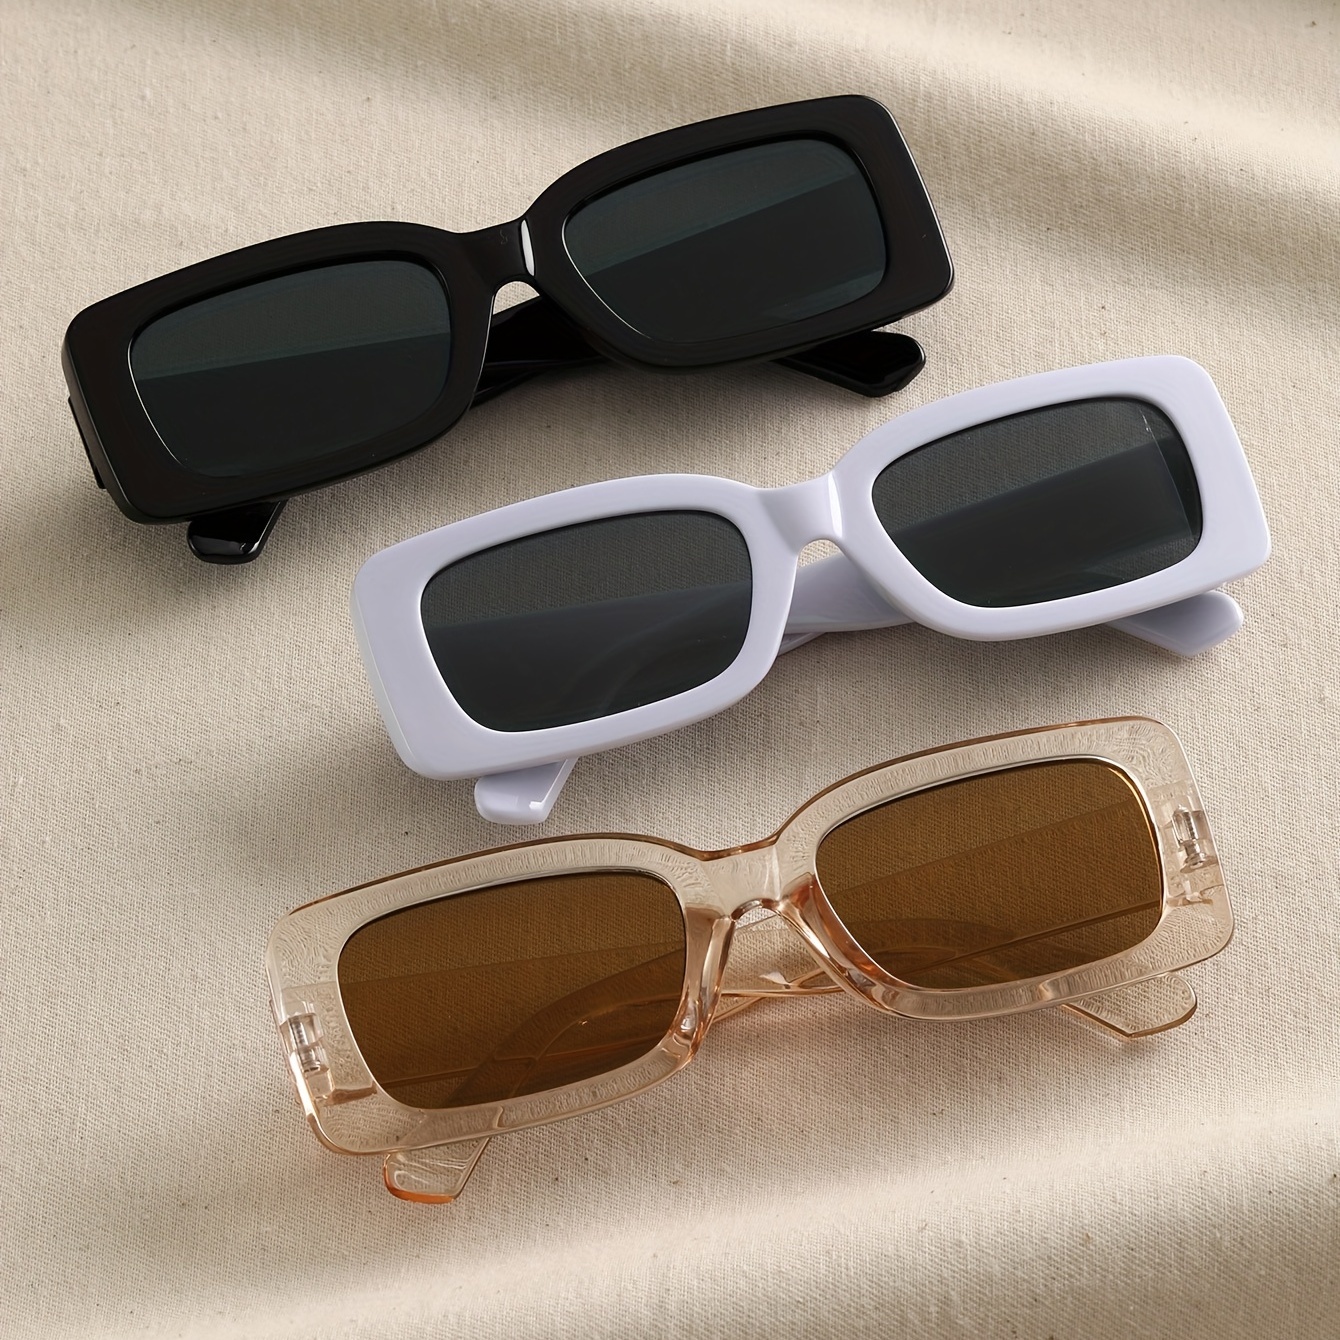 gafas lentes espejuelos de sol para mujer rectangulares moda